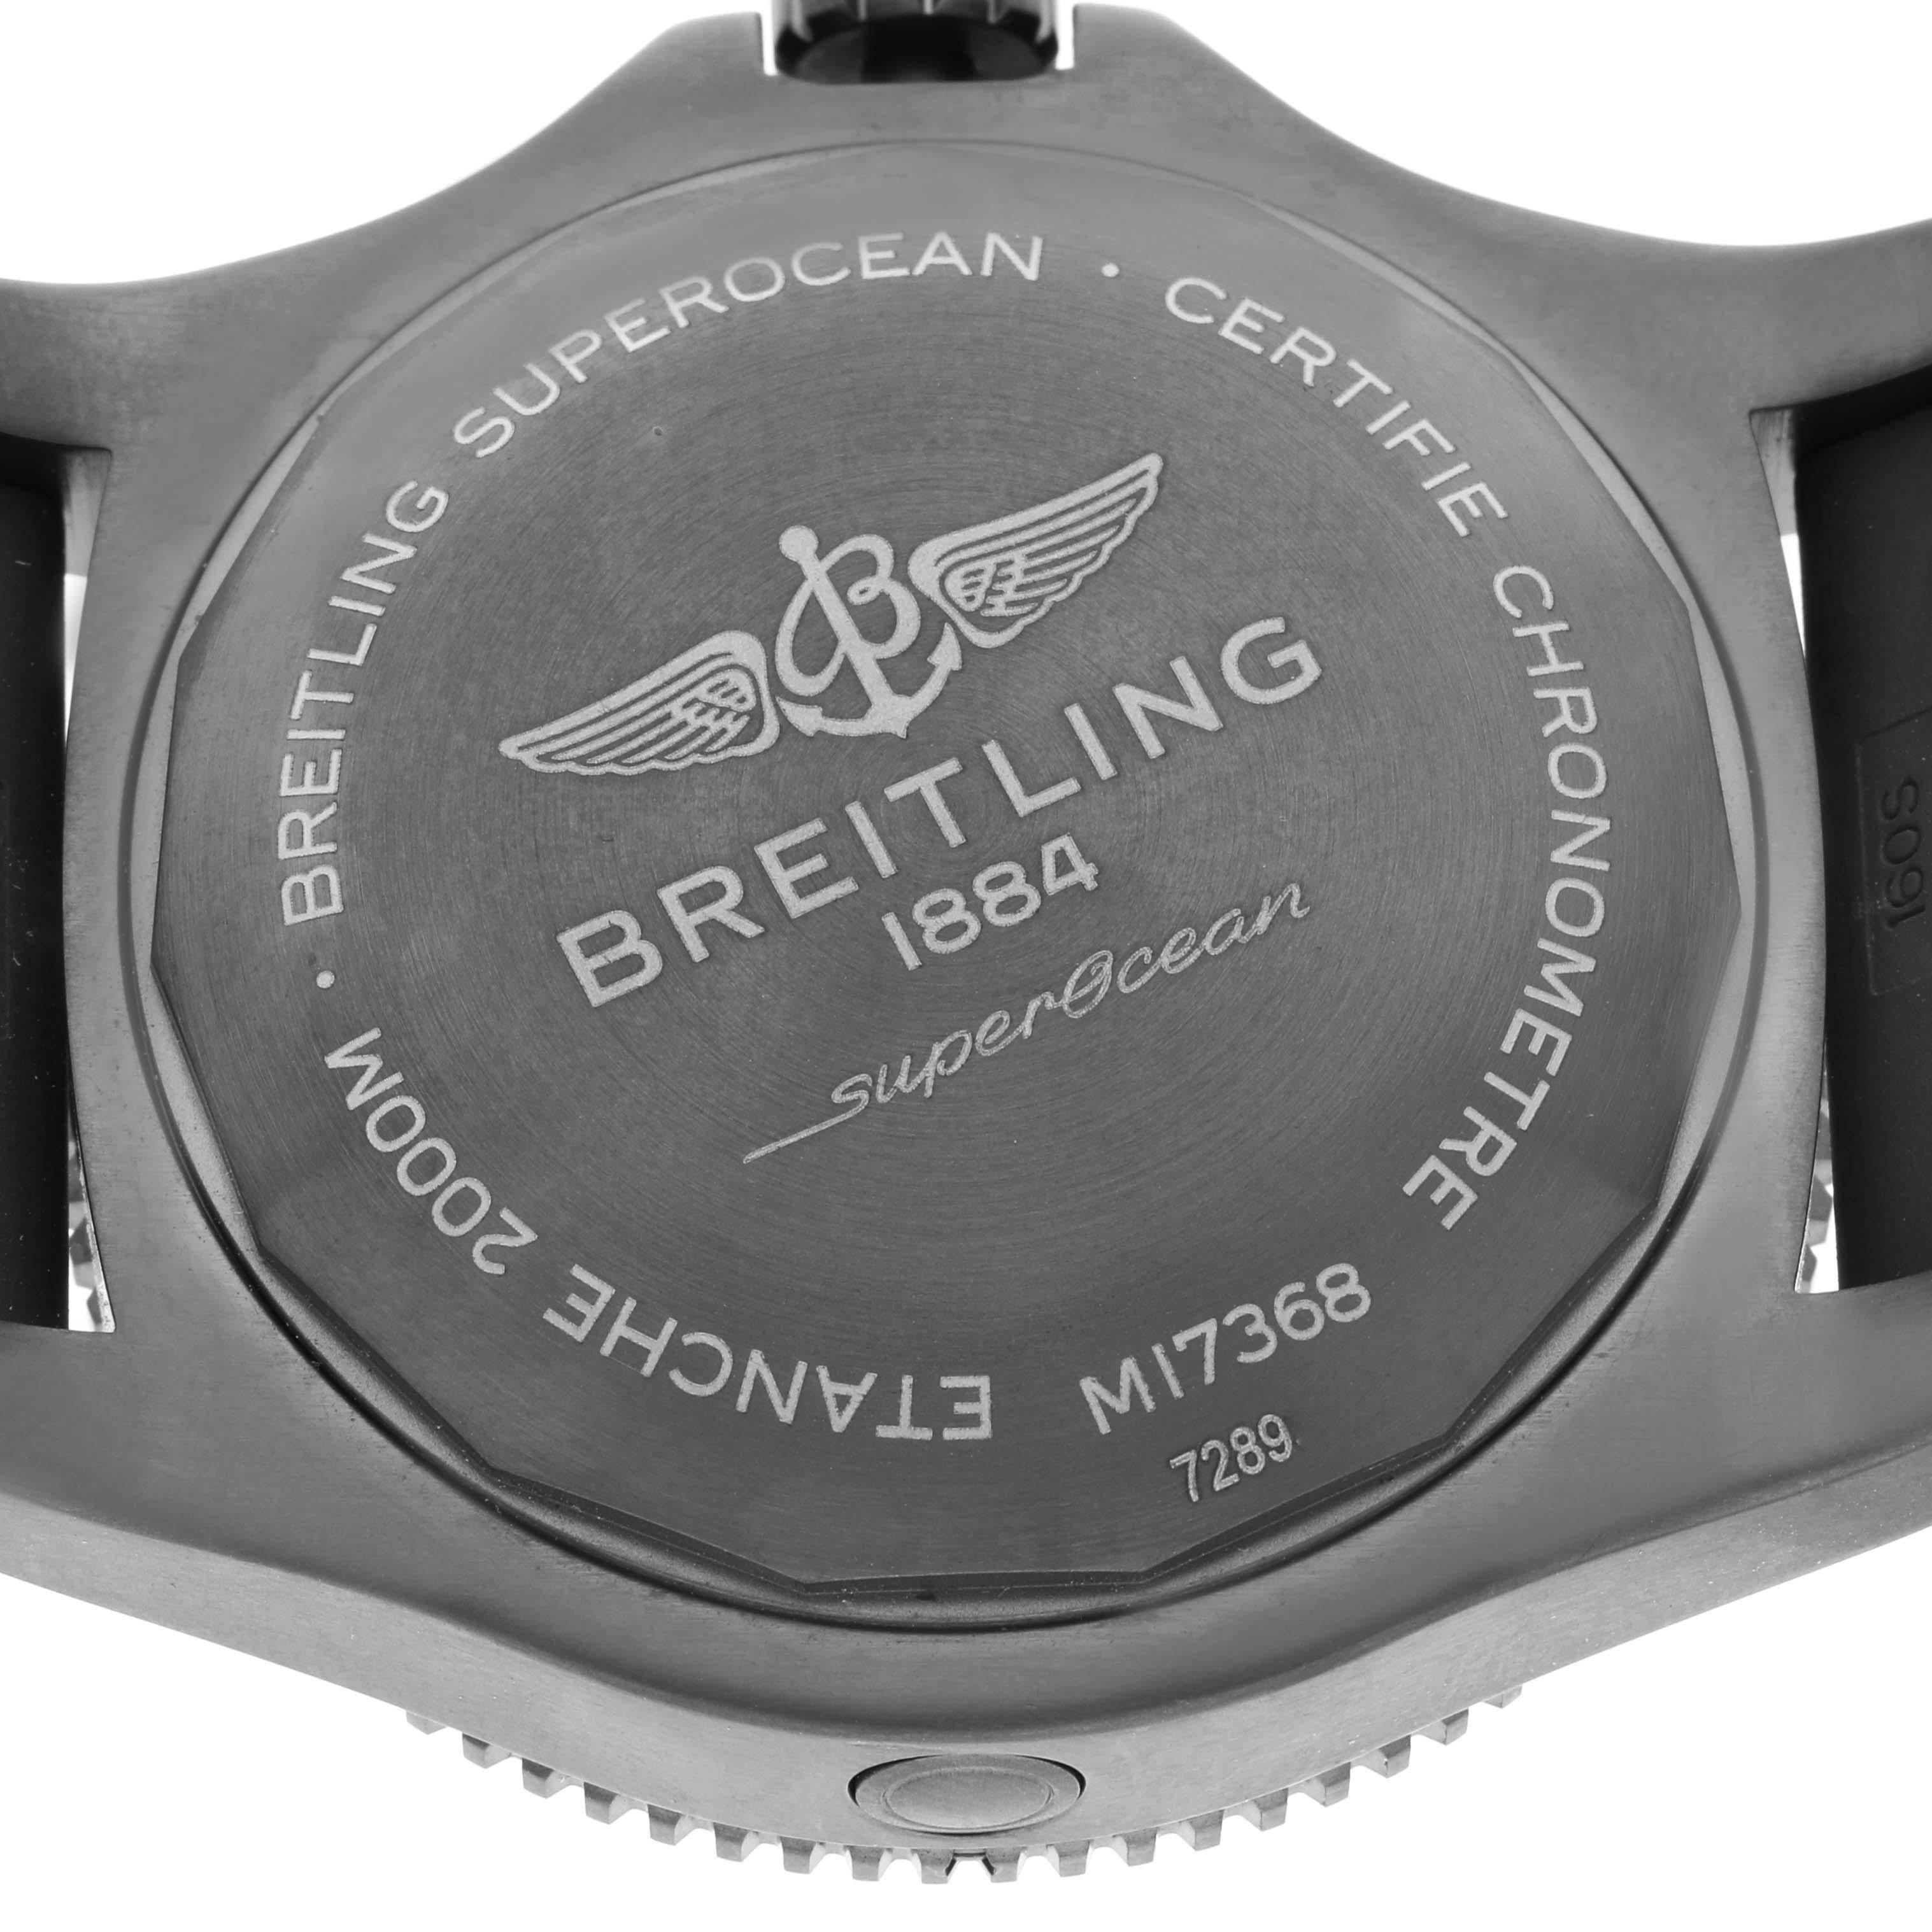 Breitling Superocean 46 Blue Dial DLC Steel Mens Watch M17368 Unworn 2